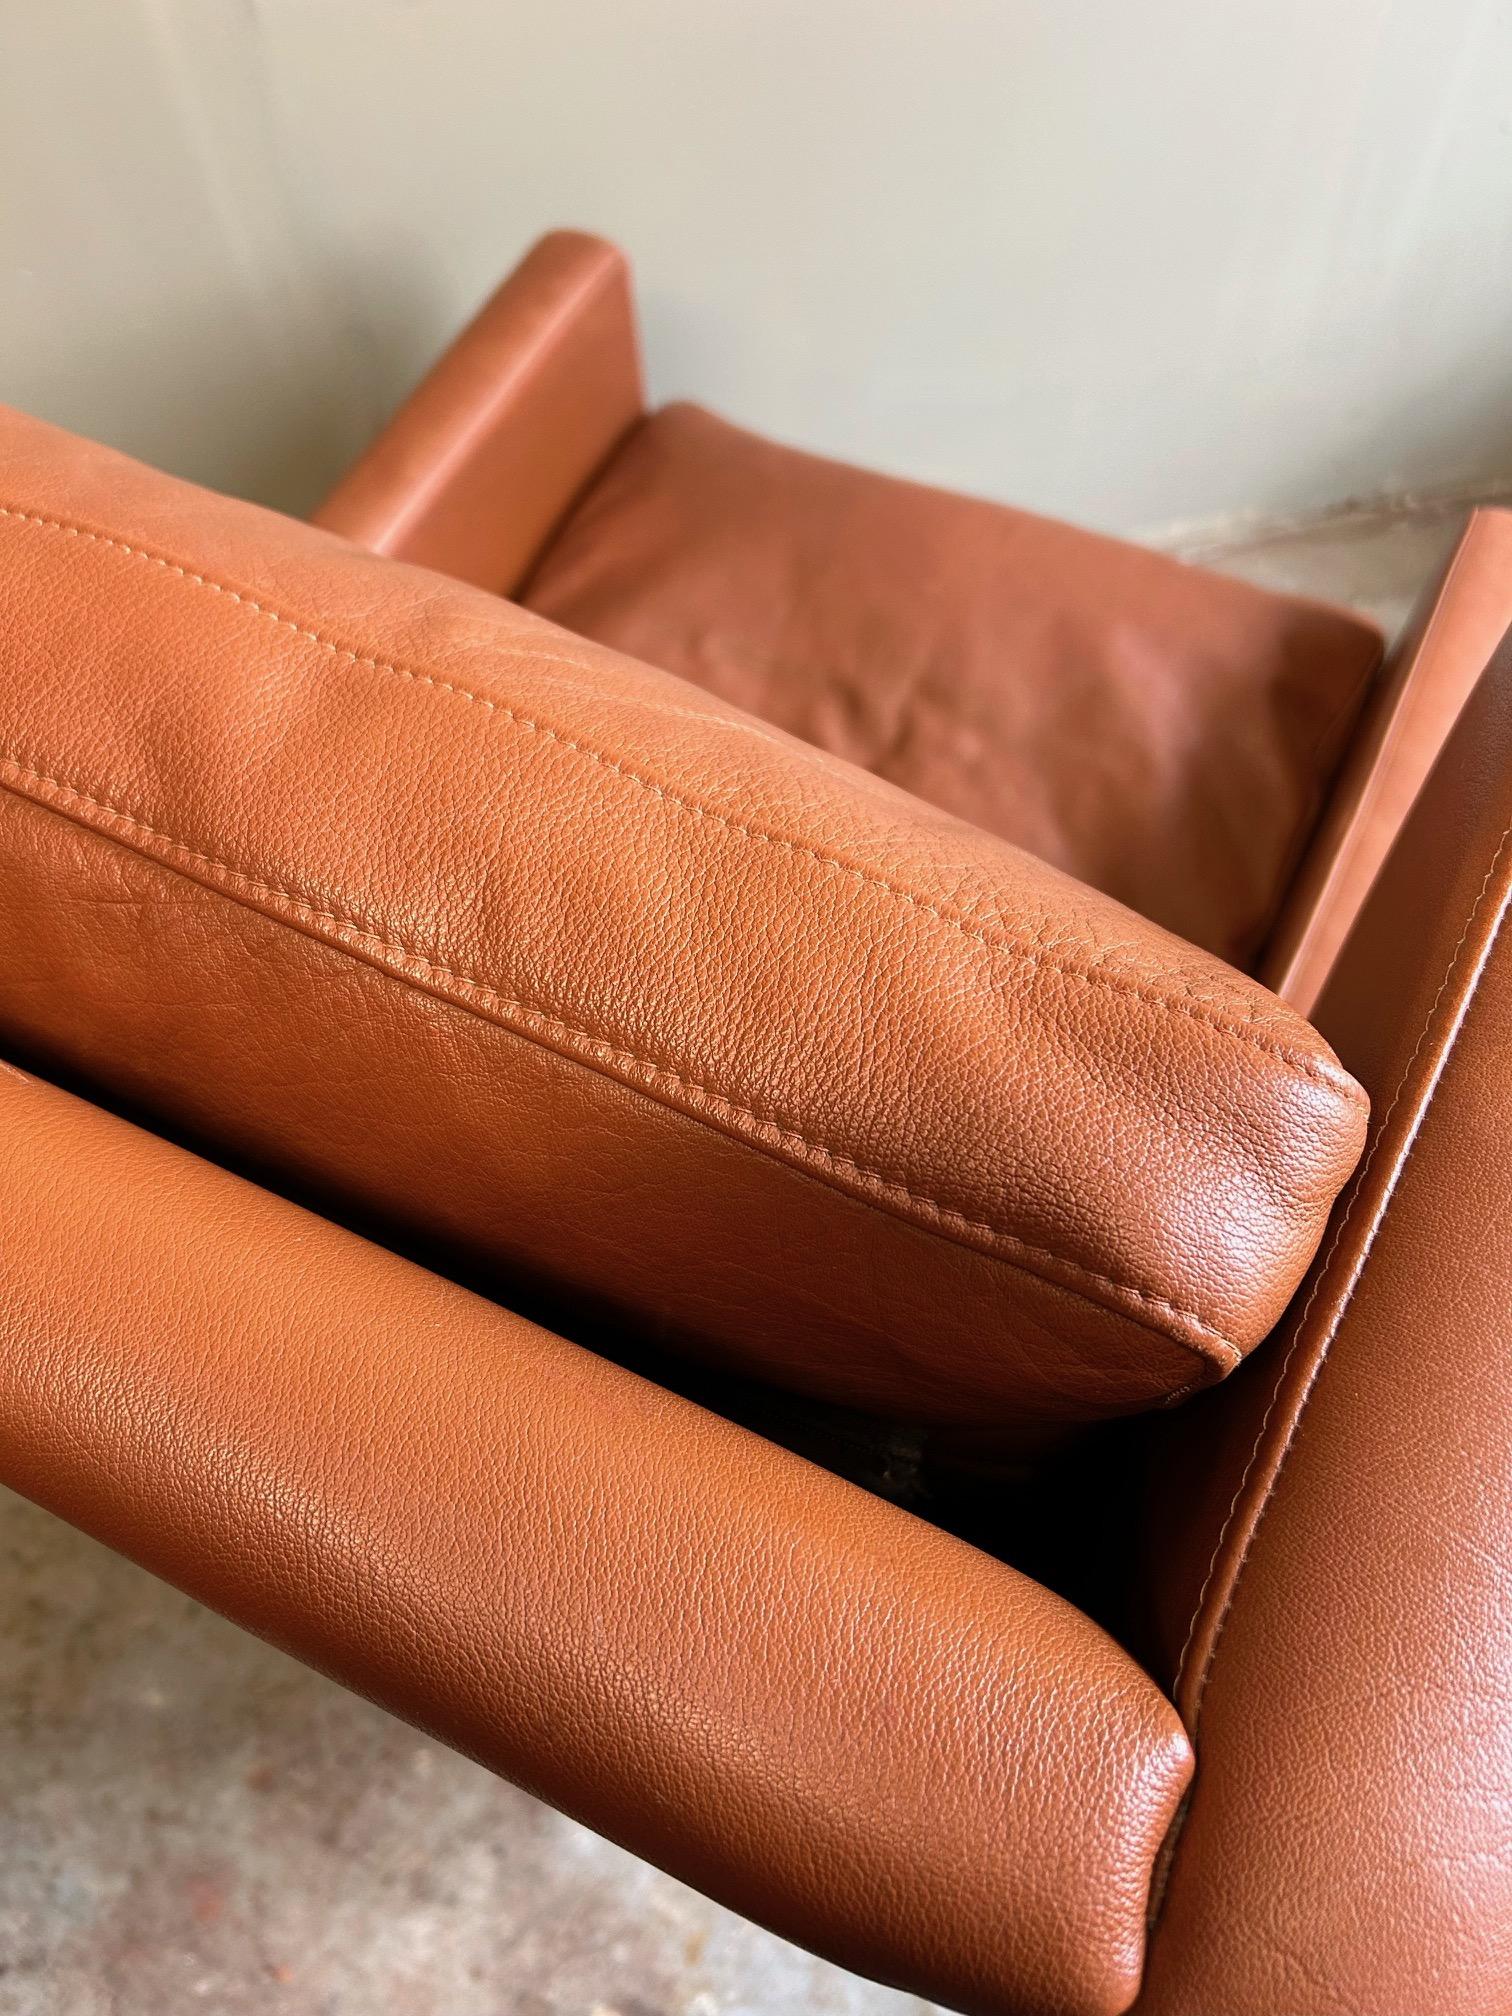 Ce magnifique fauteuil à dossier haut en cuir danois de Stouby est un ajout élégant à tout espace de vie ou de travail.

La chaise est dotée d'une large assise et d'un dossier rembourré pour un meilleur confort. Un meuble scandinave classique qui ne